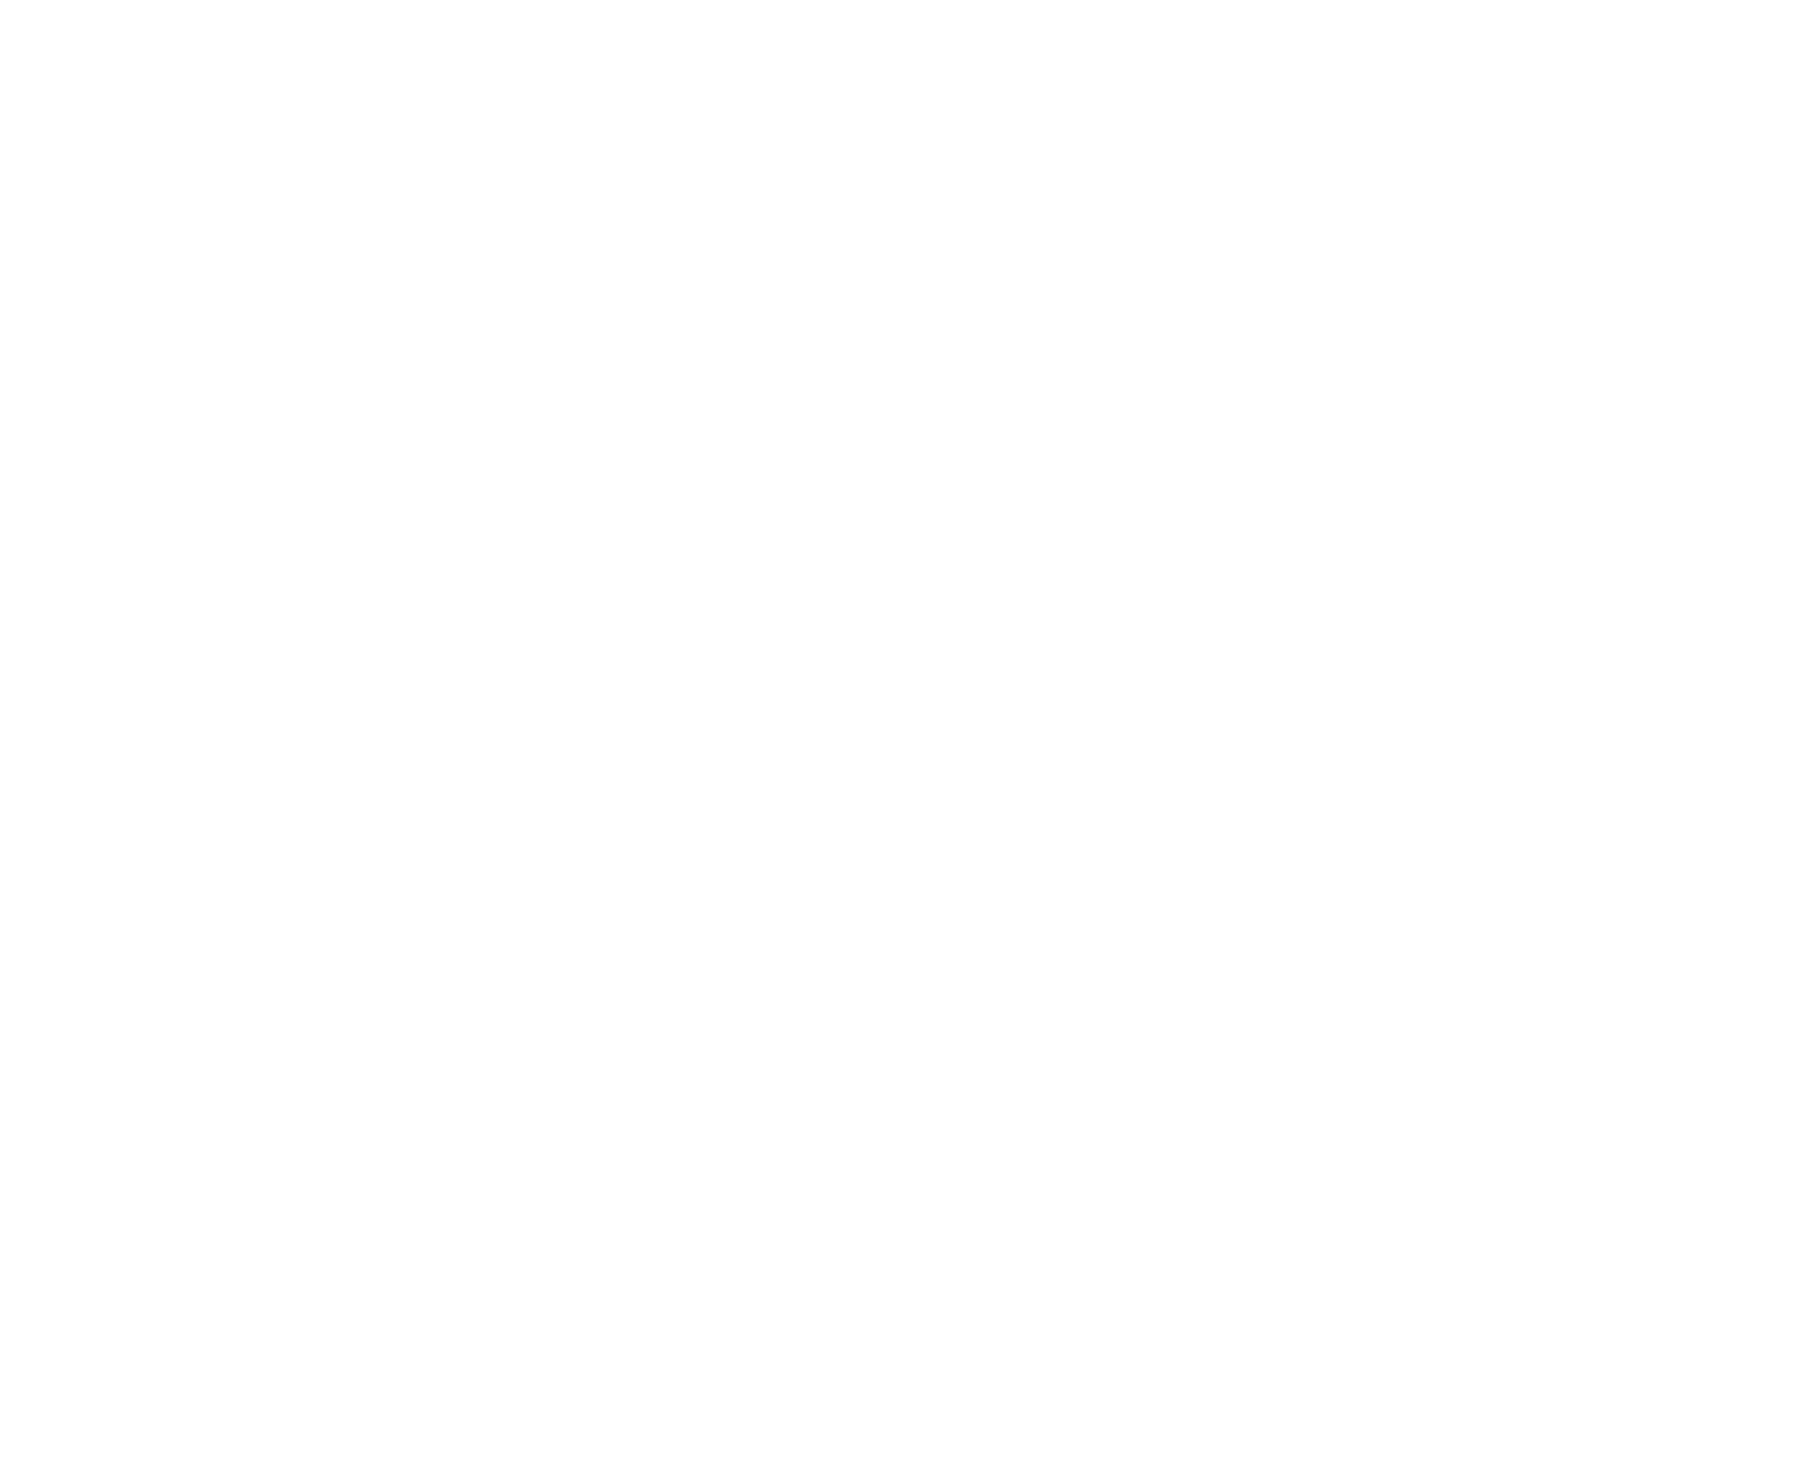 KOP logo